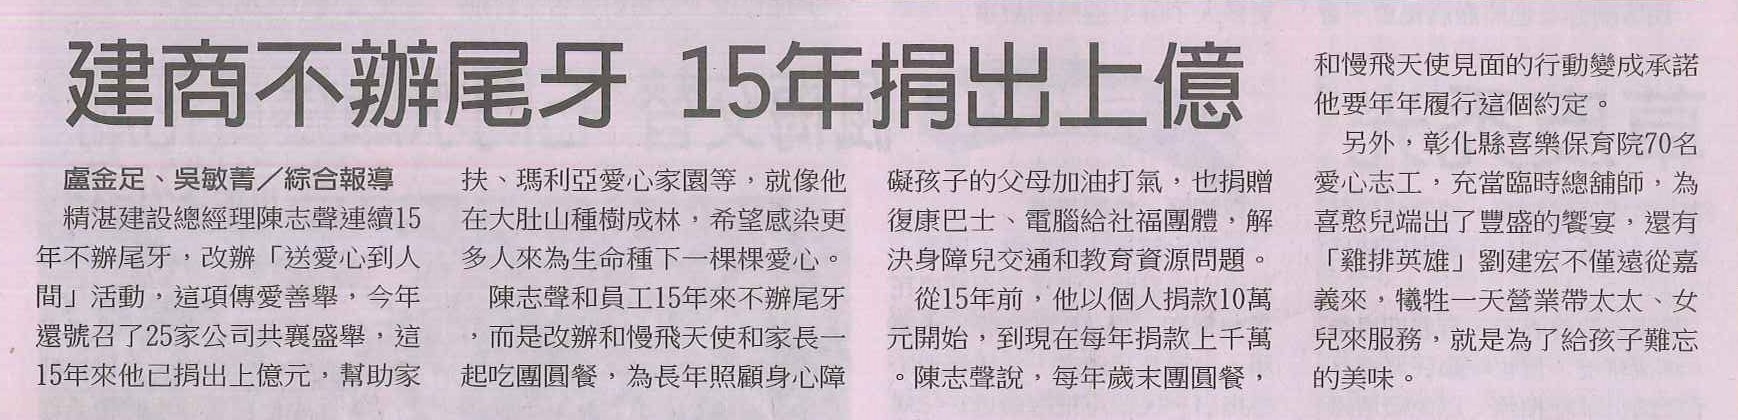 20140106中國時報B2_建商不辦尾牙 15年捐出上億